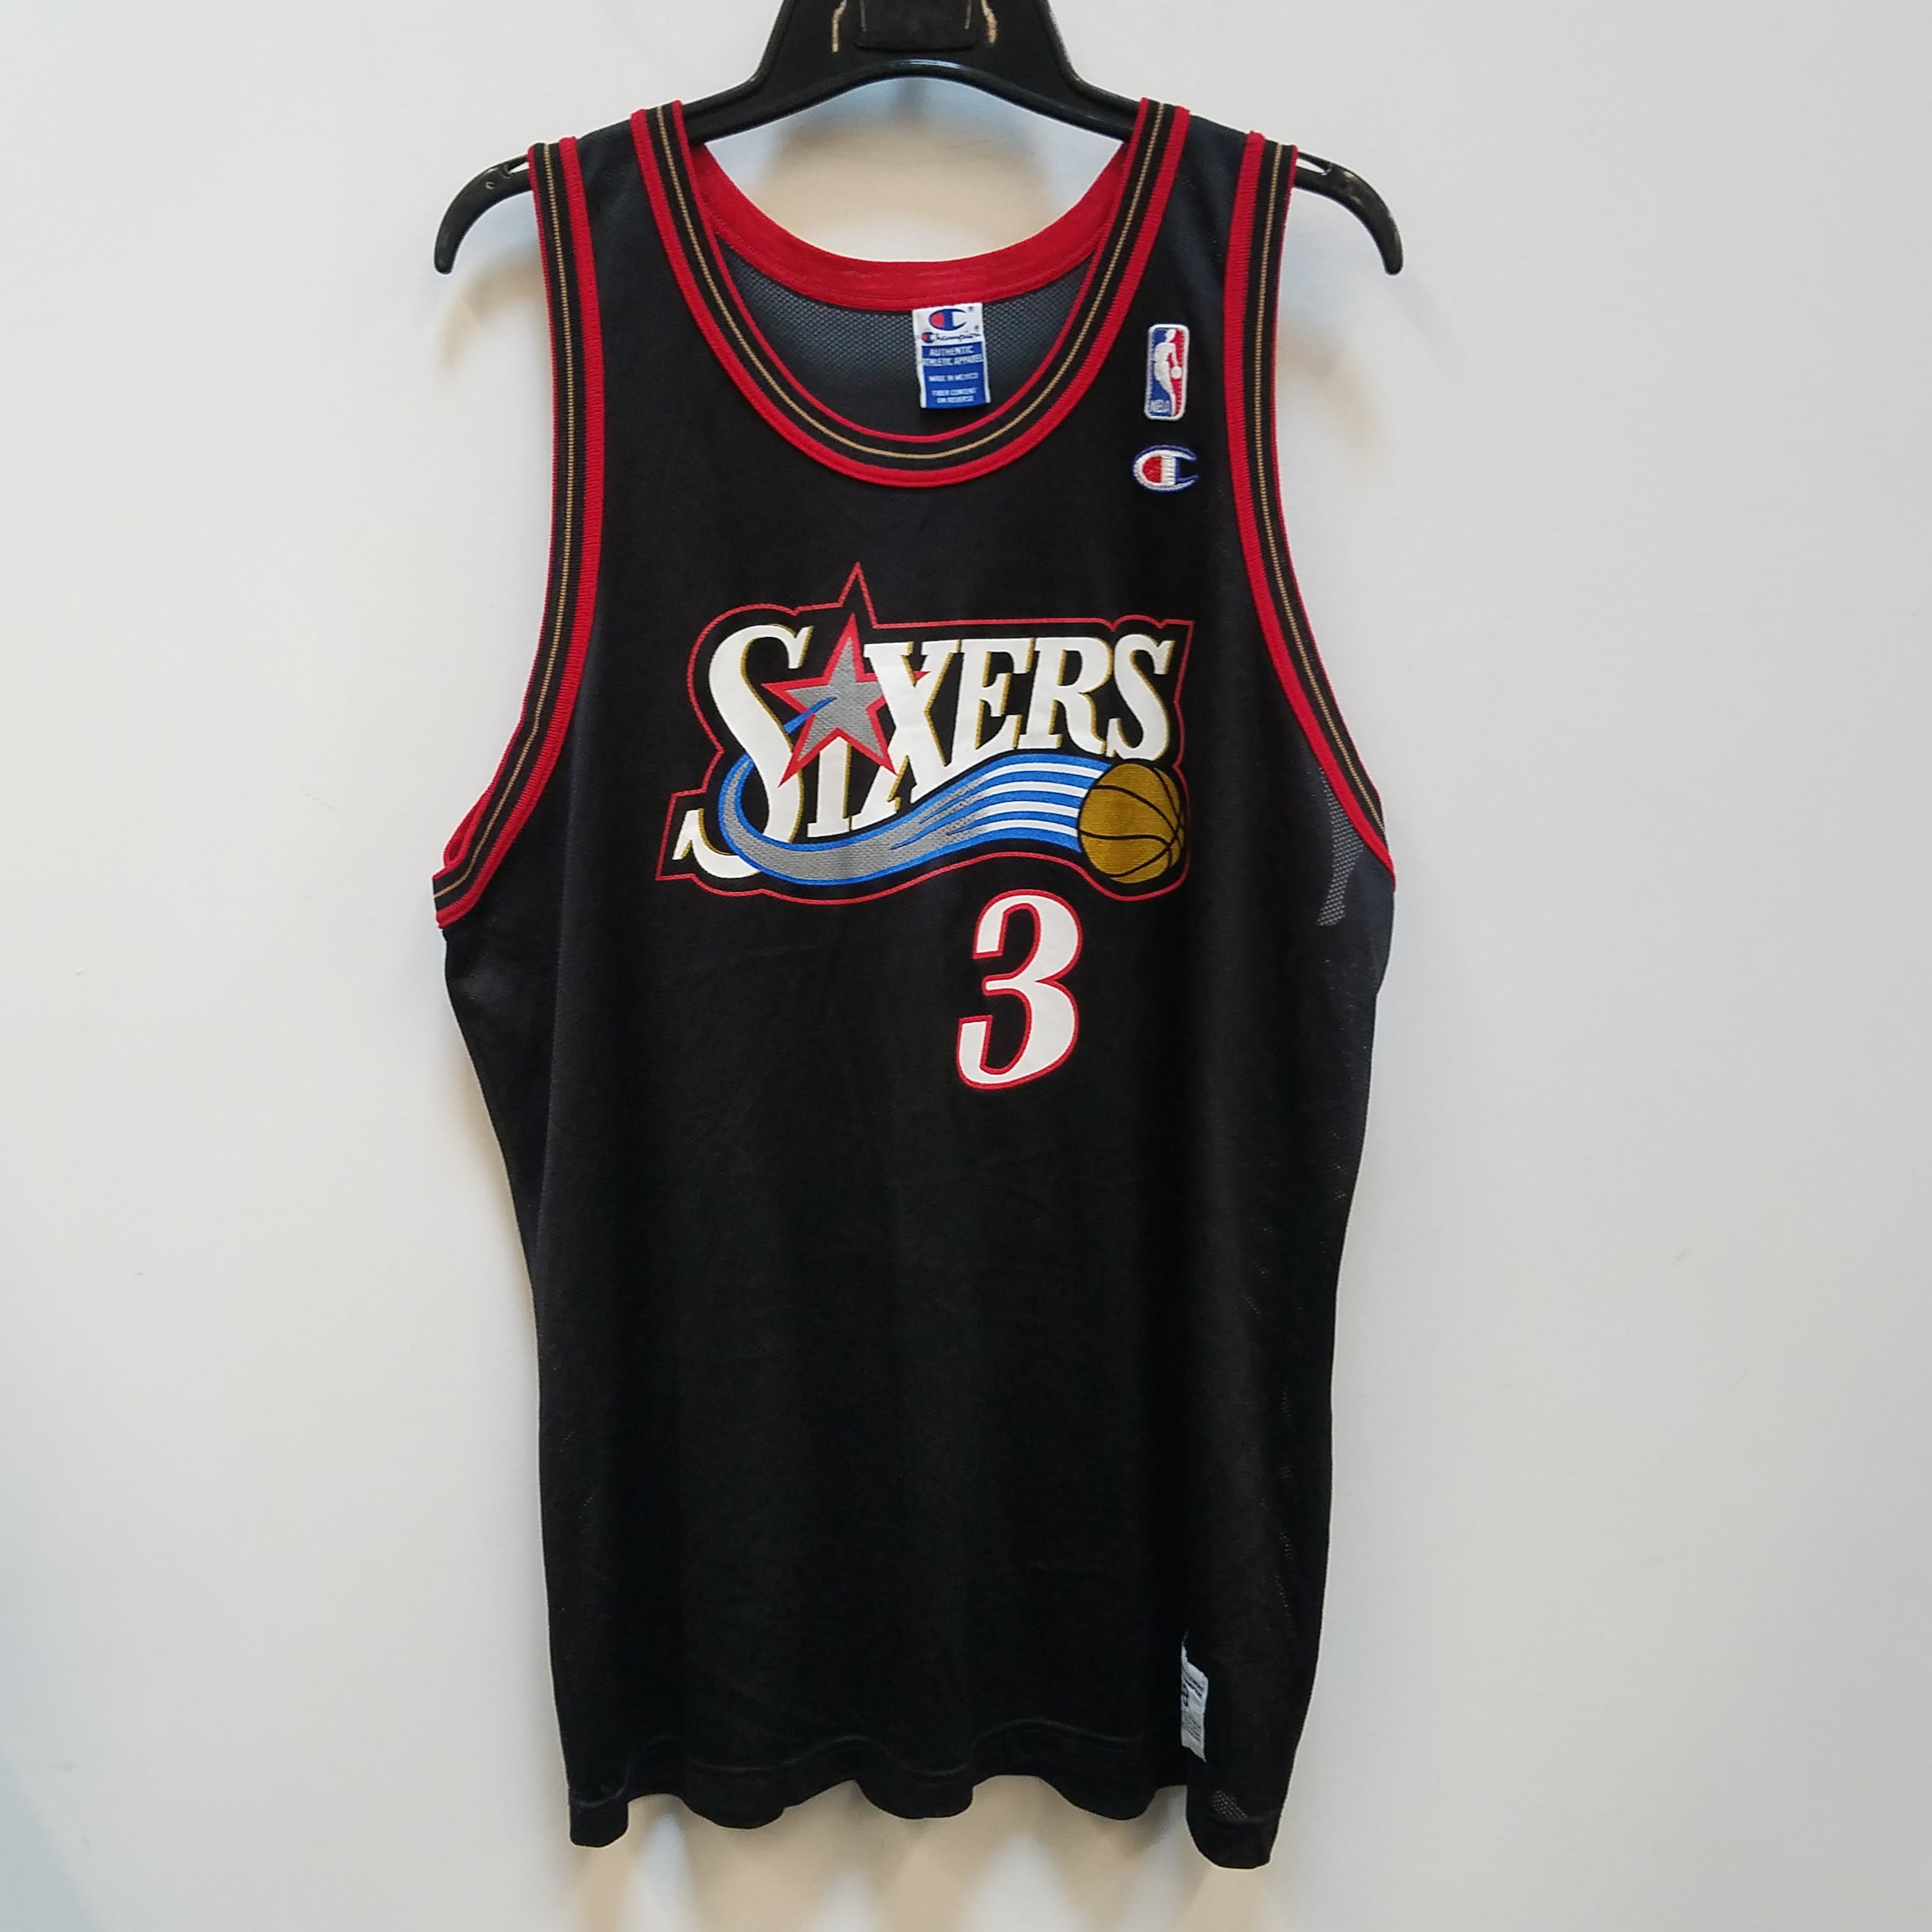 Philadelphia 76ers Authentic Allen Iverson Champion jersey size 48 XL